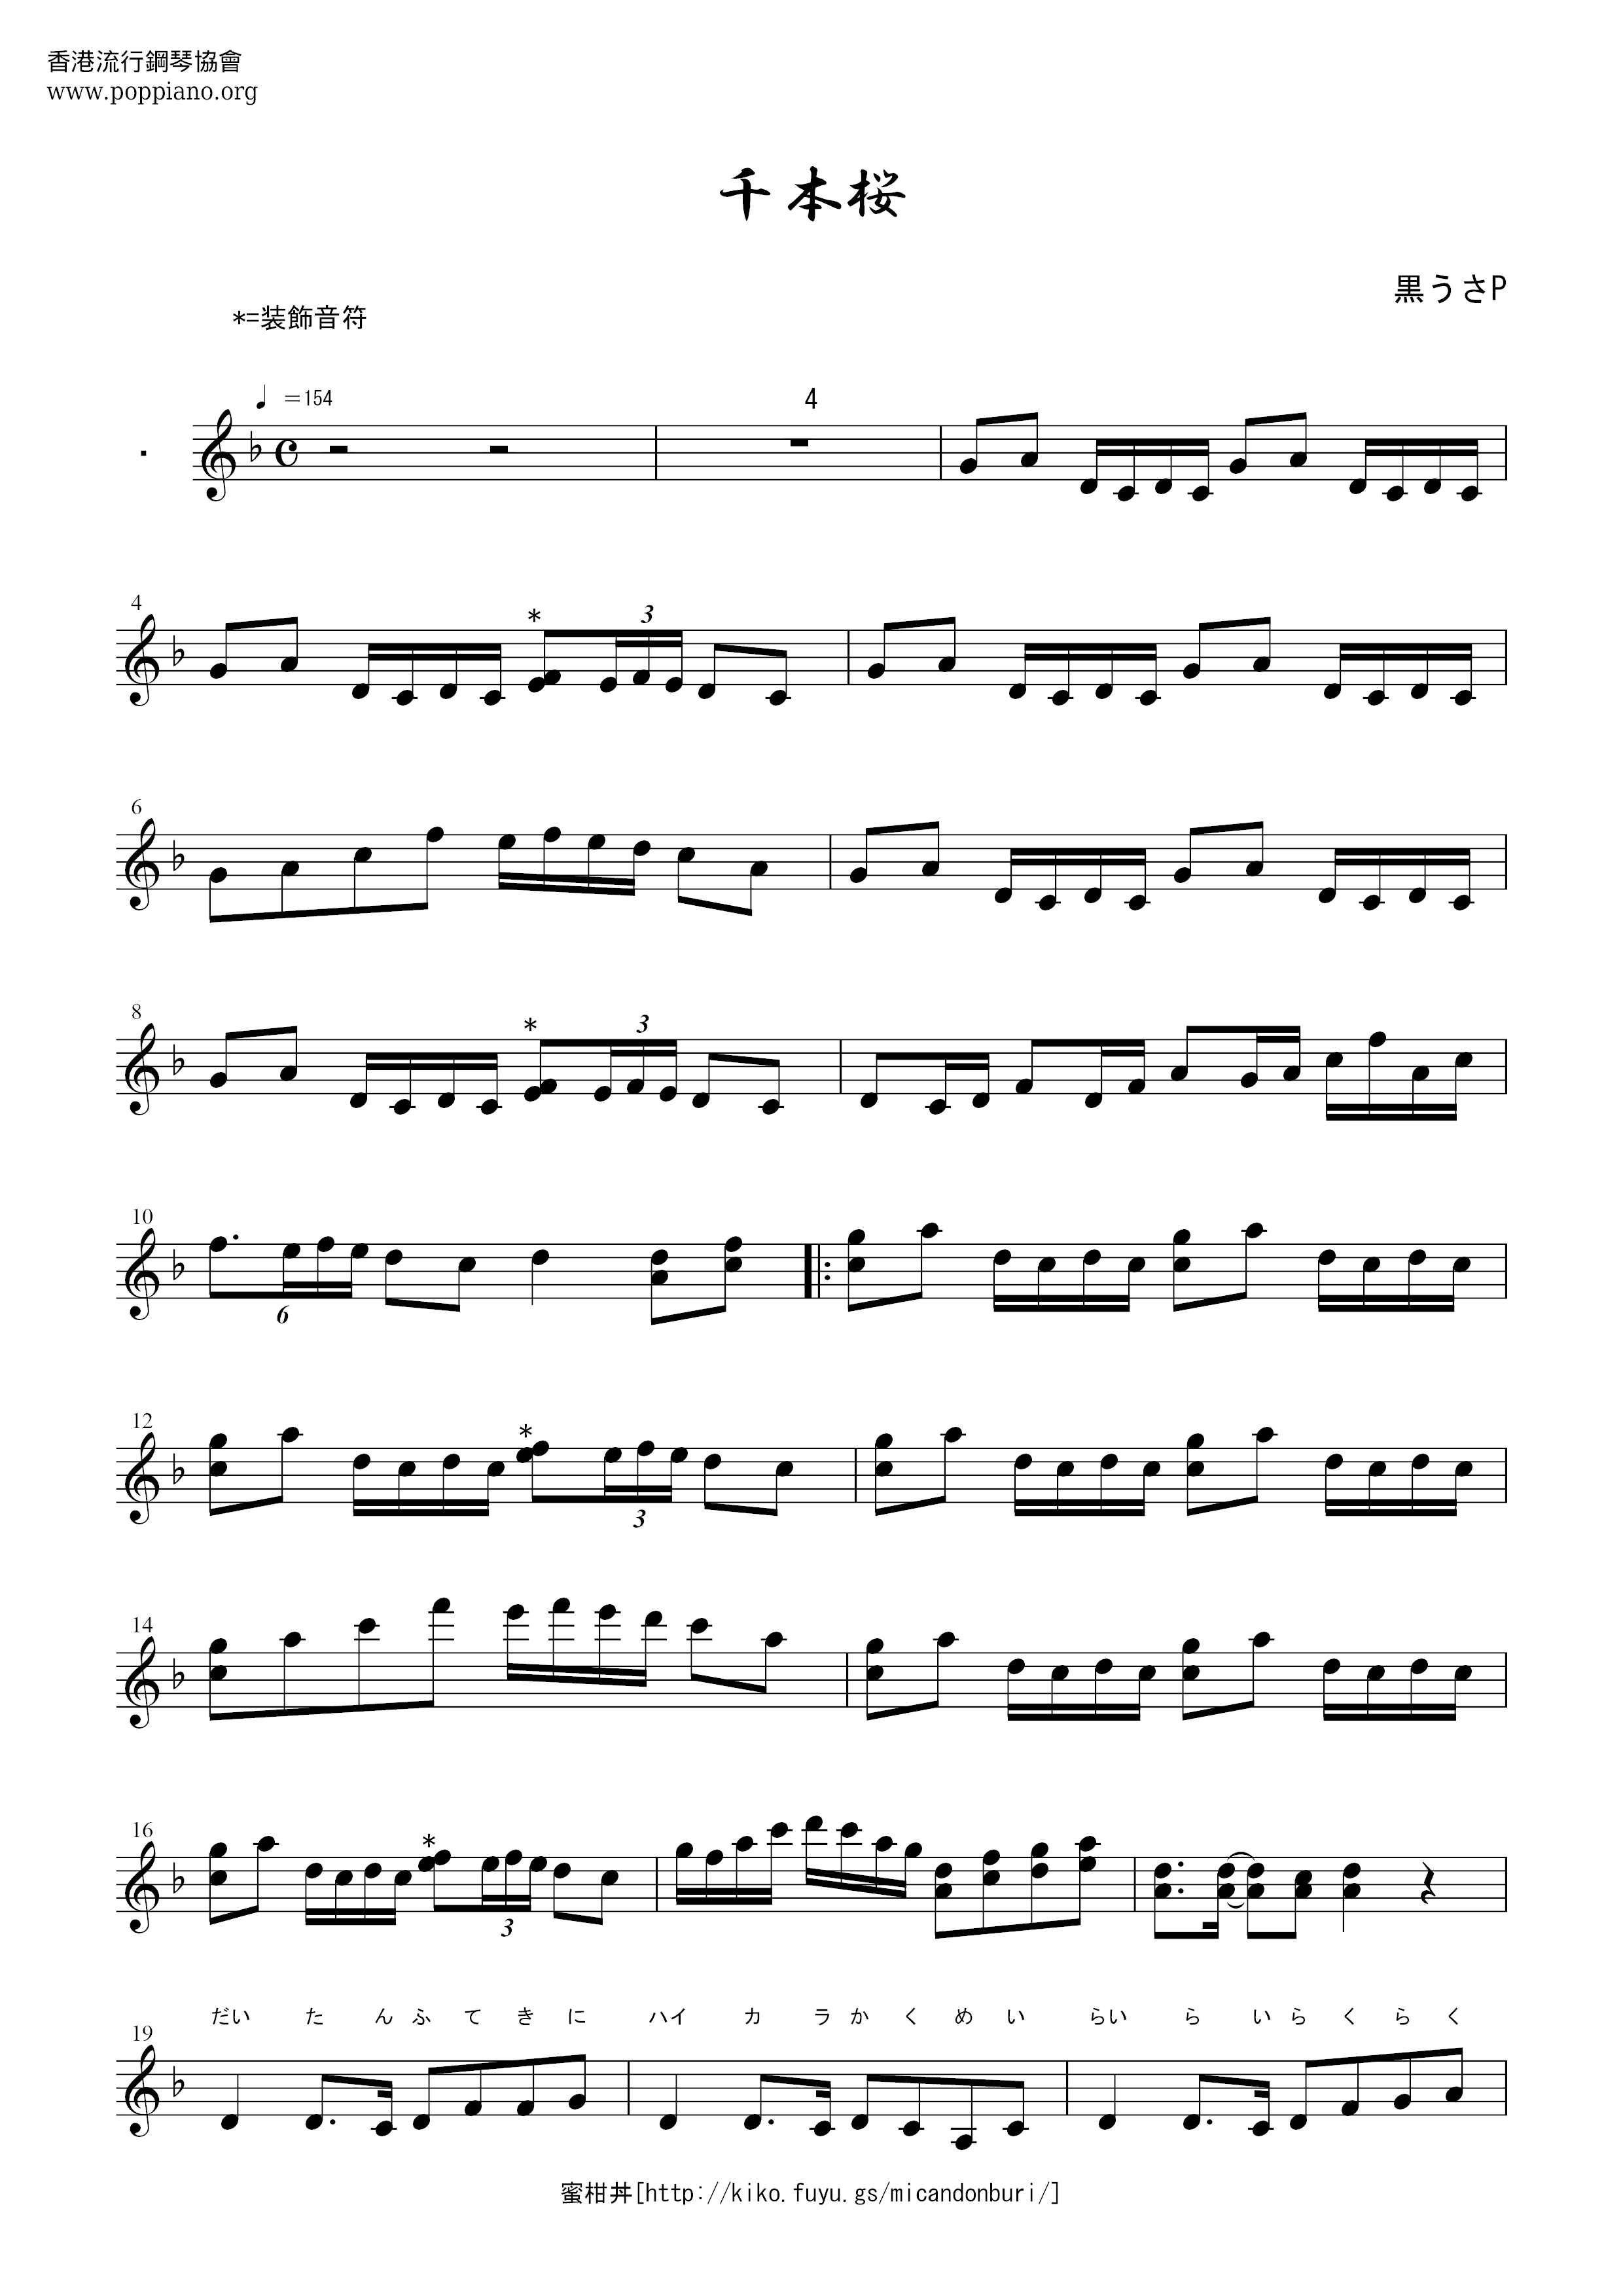 Chimoto Sakura / Senbonzakura Score